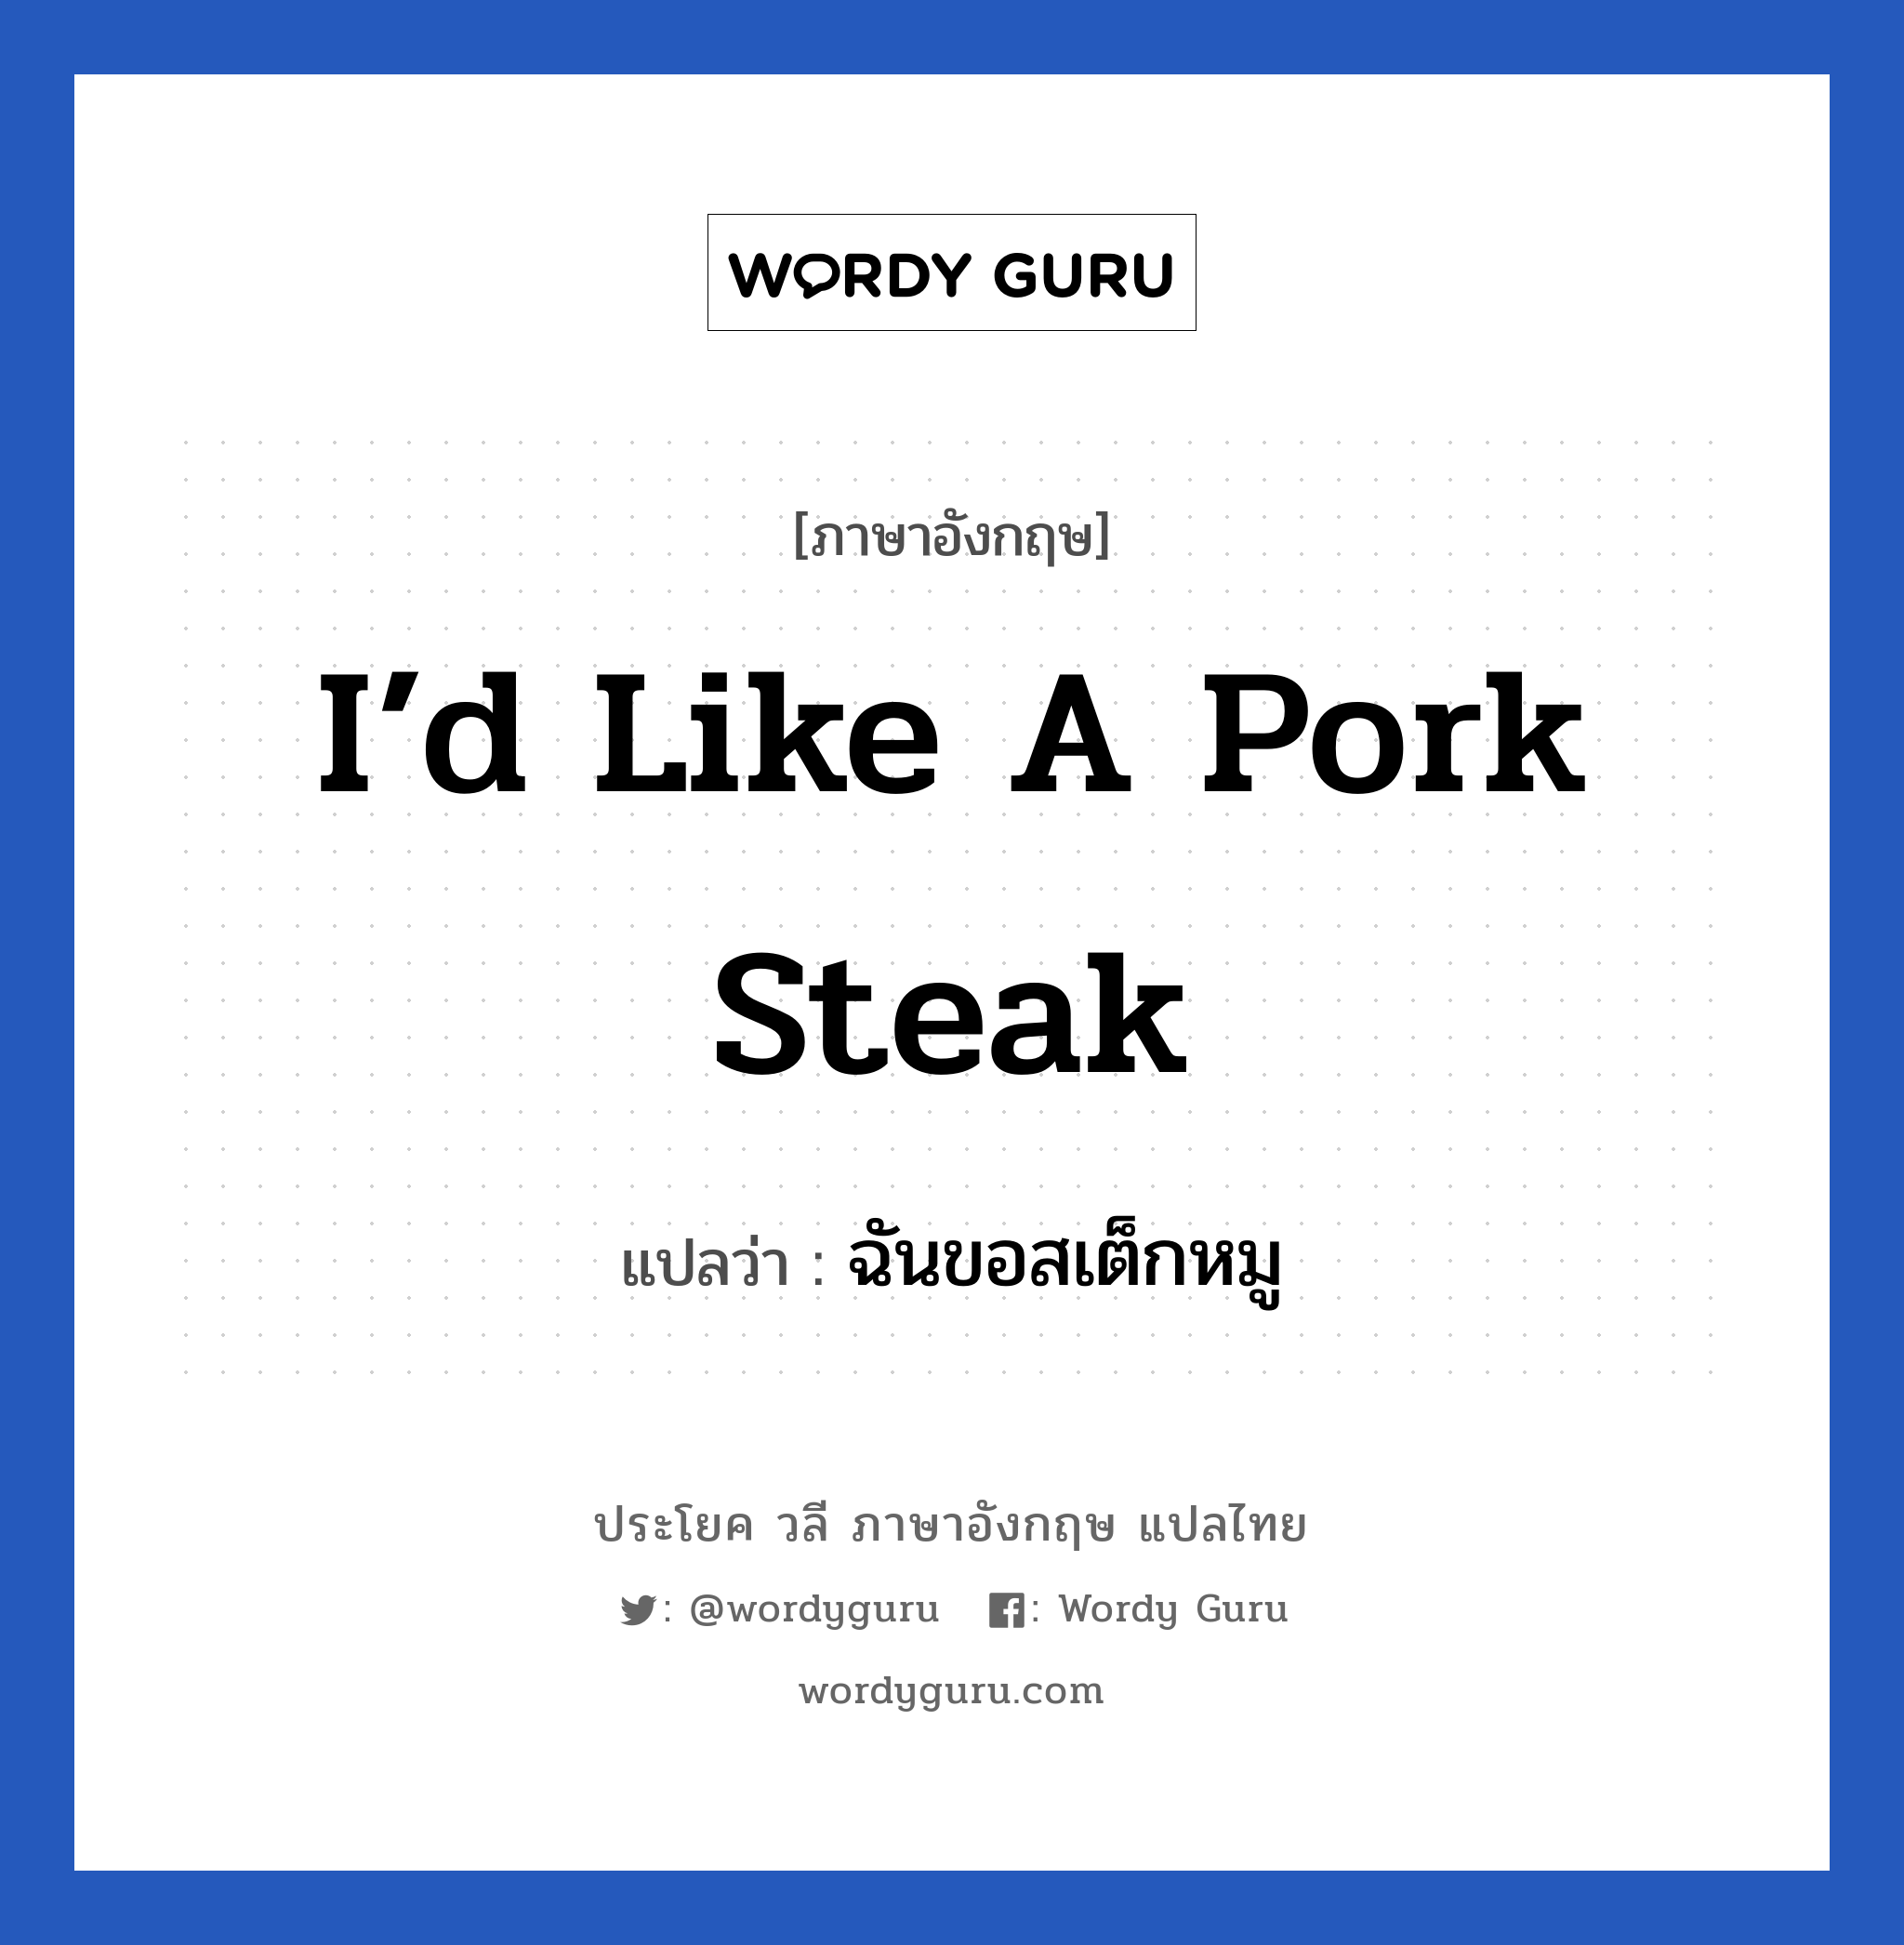 ฉันขอสเต็กหมู ภาษาอังกฤษ?, วลีภาษาอังกฤษ ฉันขอสเต็กหมู แปลว่า I’d like a pork steak